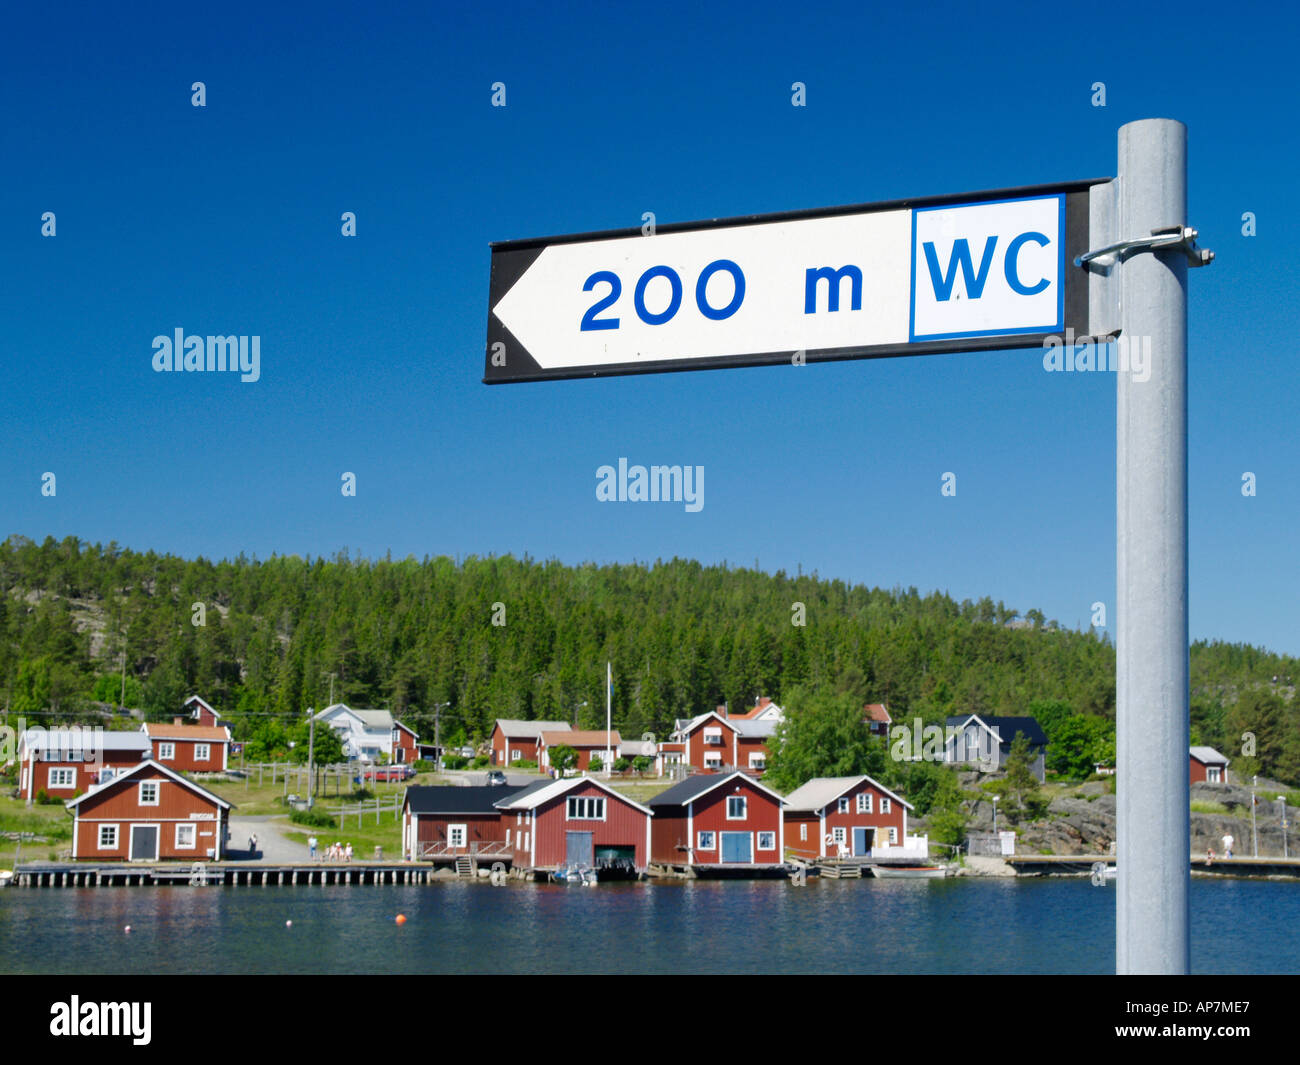 Höga Kusten, schwedisches Dorf melden Sie 200m WC Stockfoto